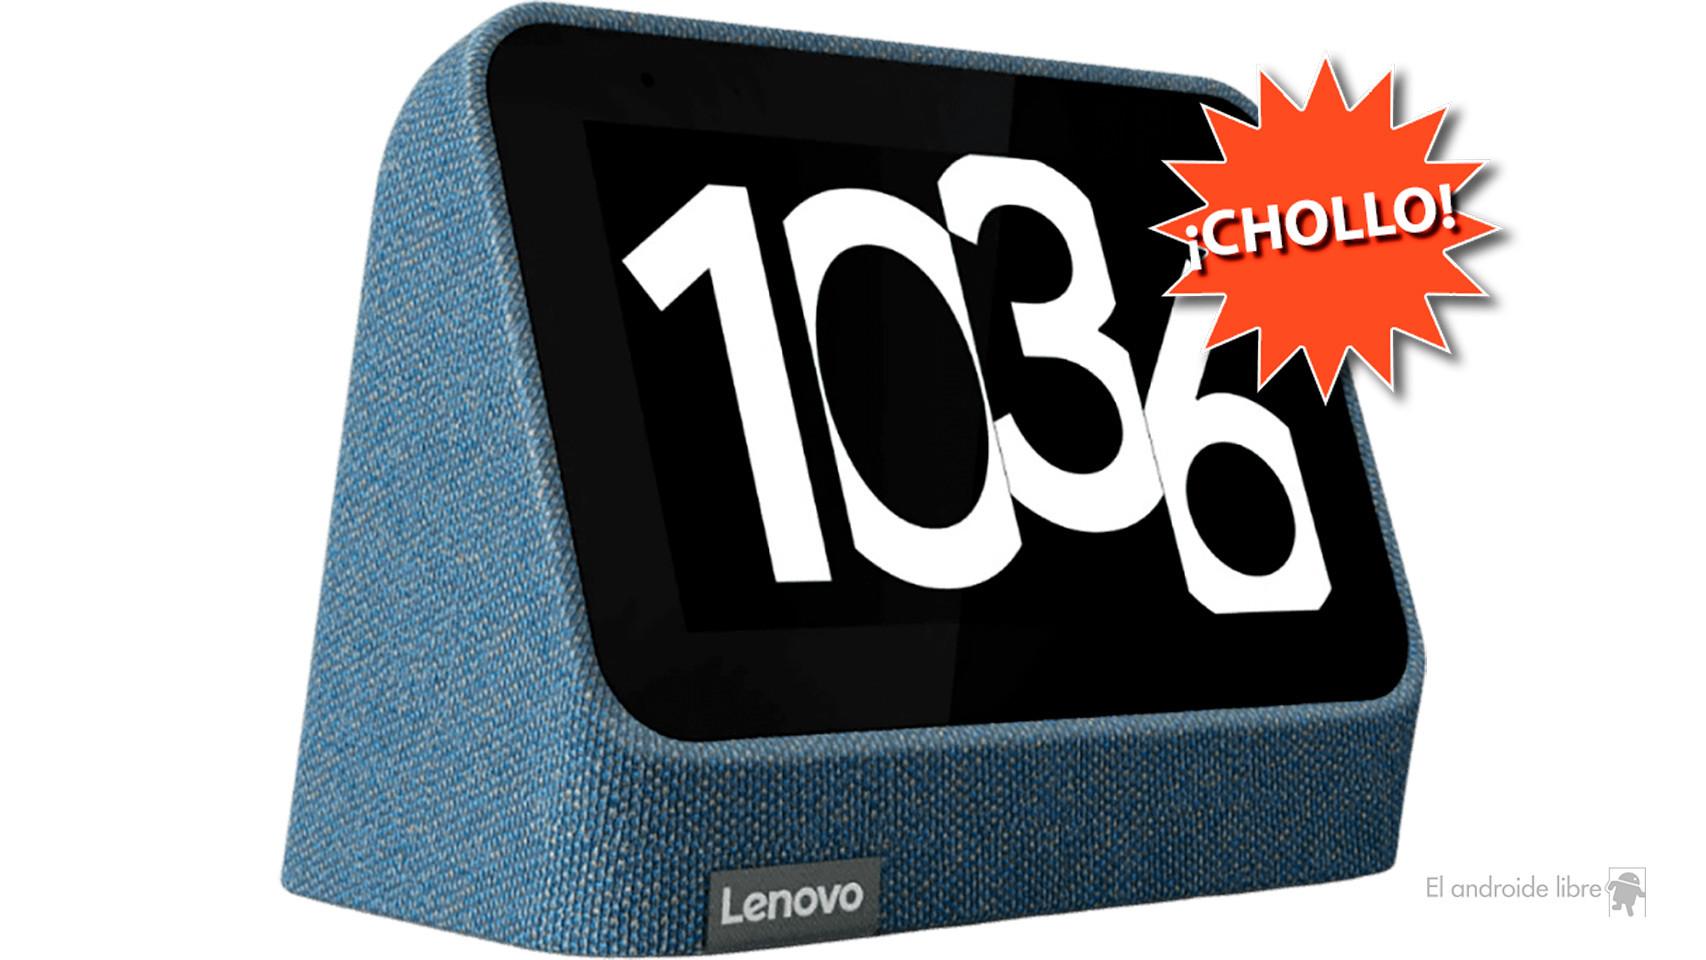 Así es el nuevo reloj despertador inteligente de Lenovo, Innovación